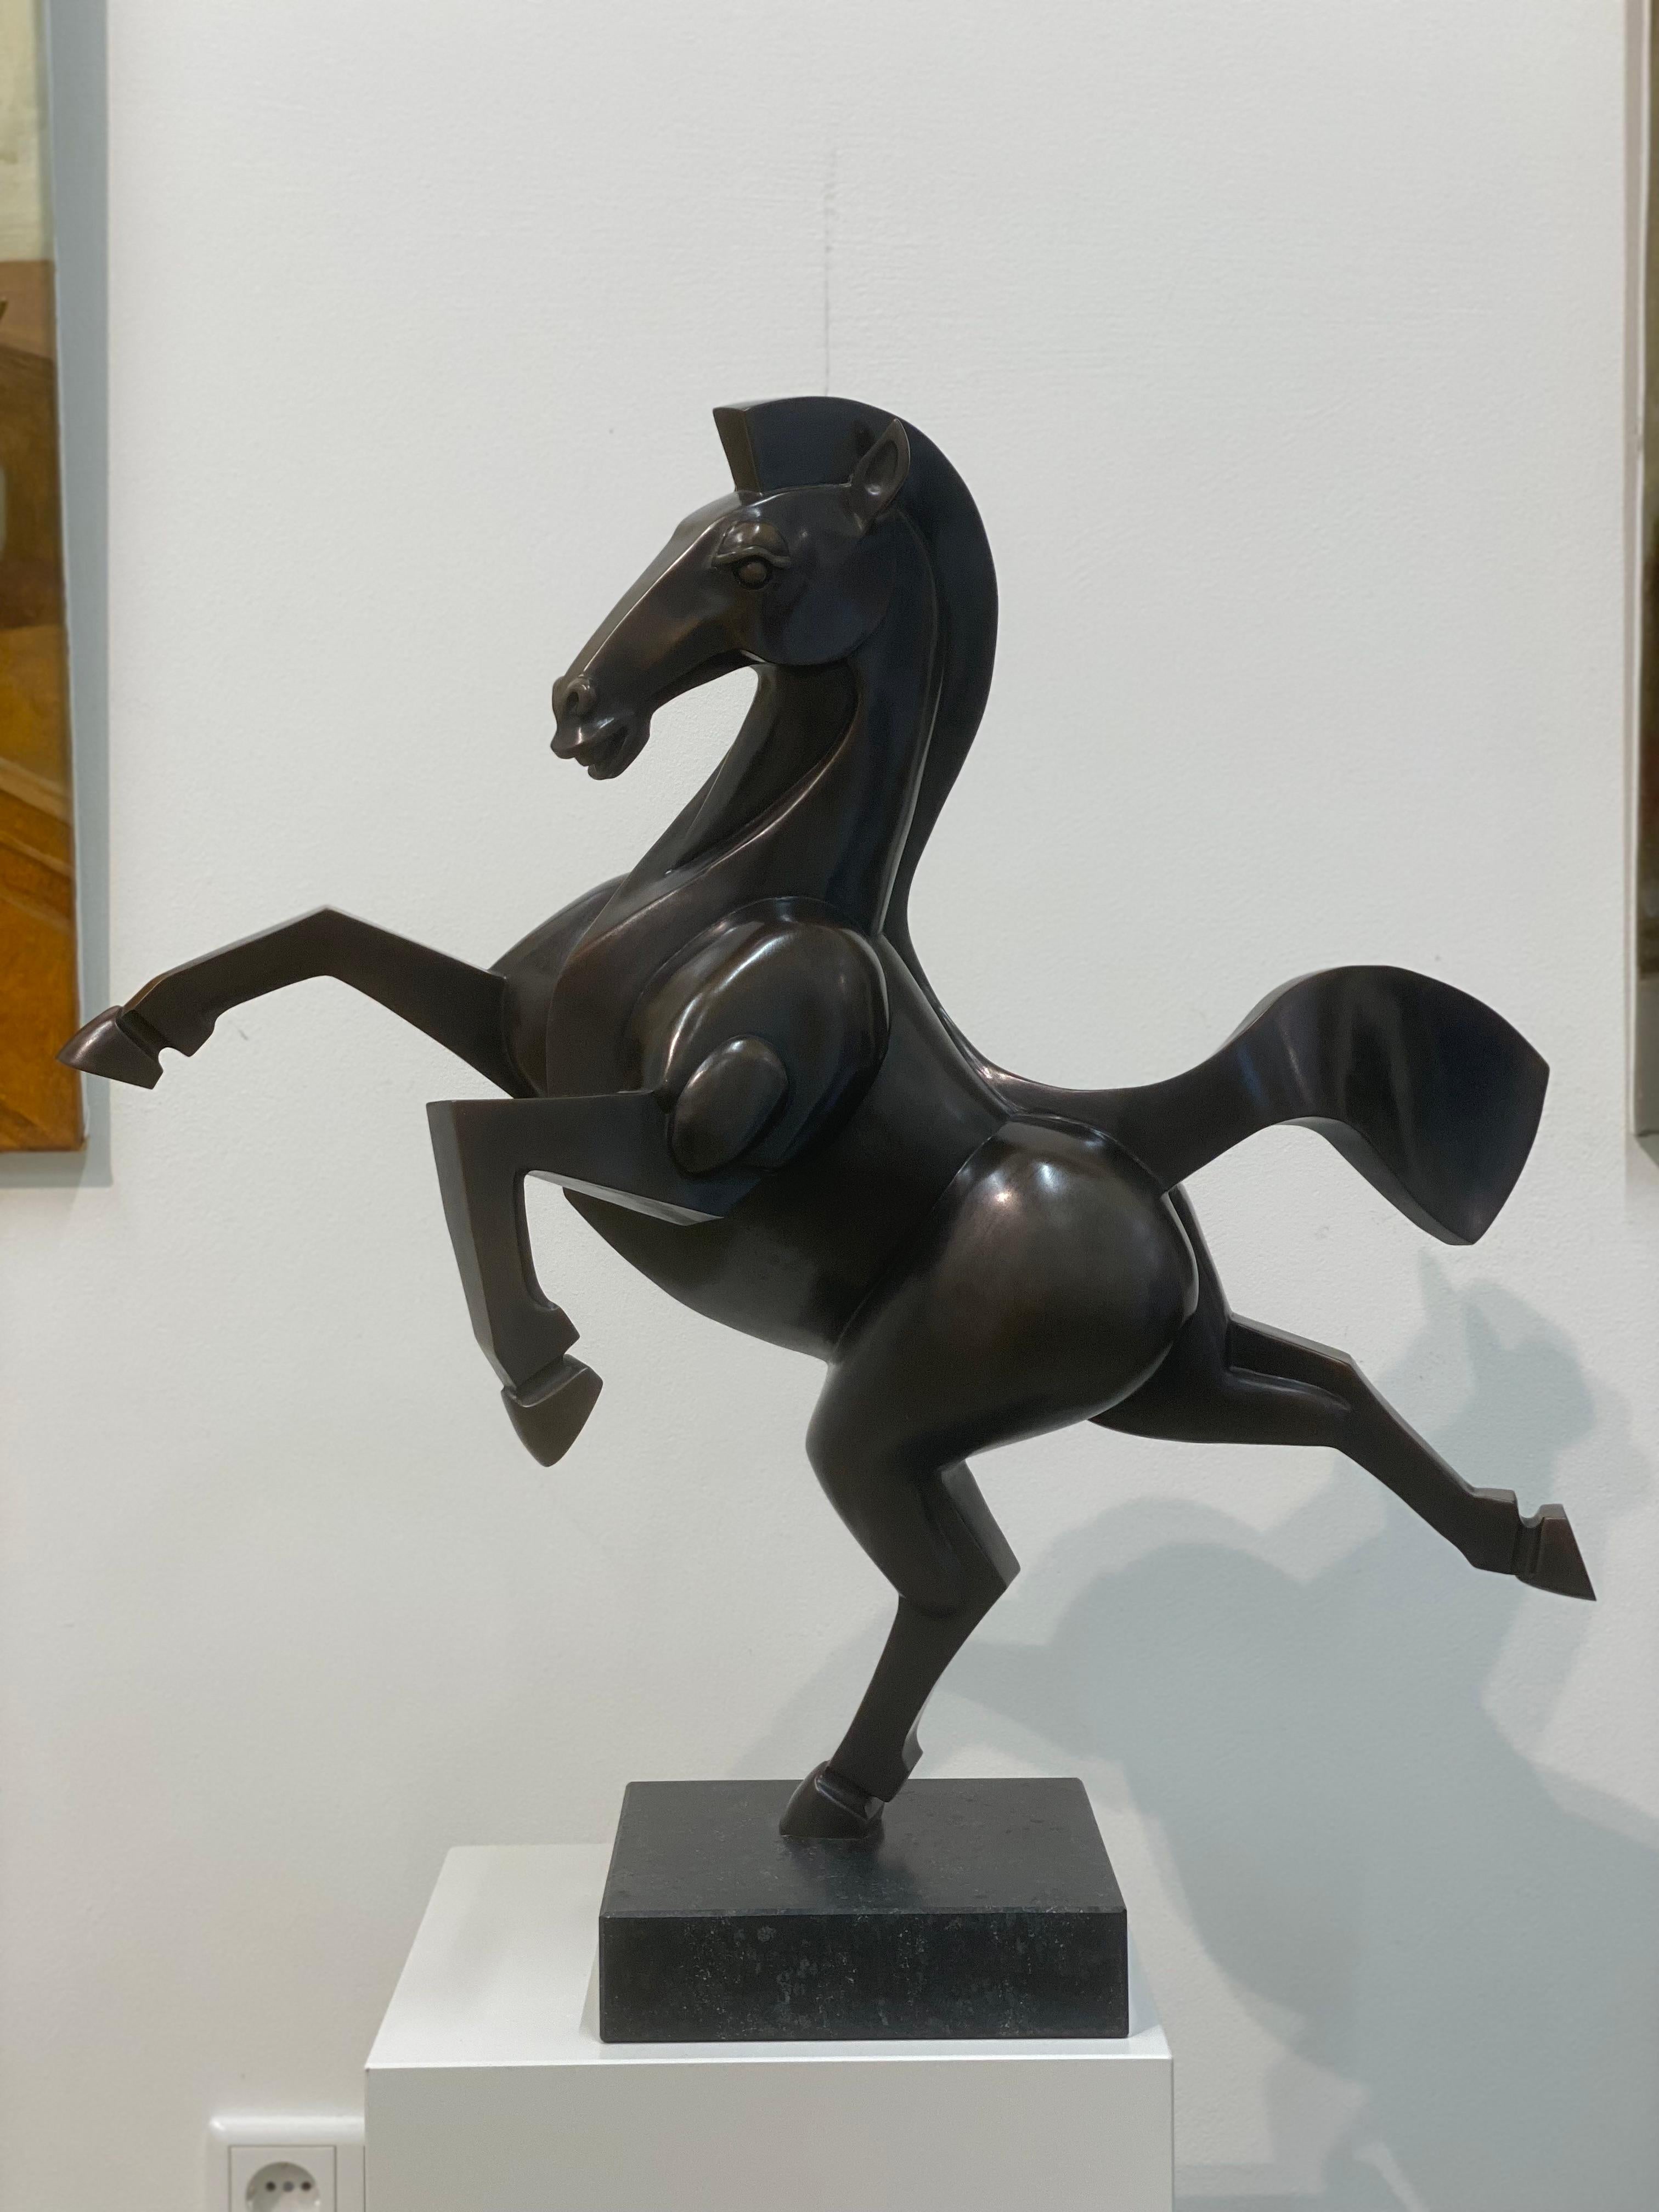 Frans van Straaten
Wildes Pferd VII
Bronze auf Blaustein-Sockel
H 65 cm B 65 cm T 35 cm

Der niederländische Künstler Frans van Straaten (1963) sollte als Künstler des Gleichgewichts bezeichnet werden, der immer auf der Suche nach Harmonie zwischen